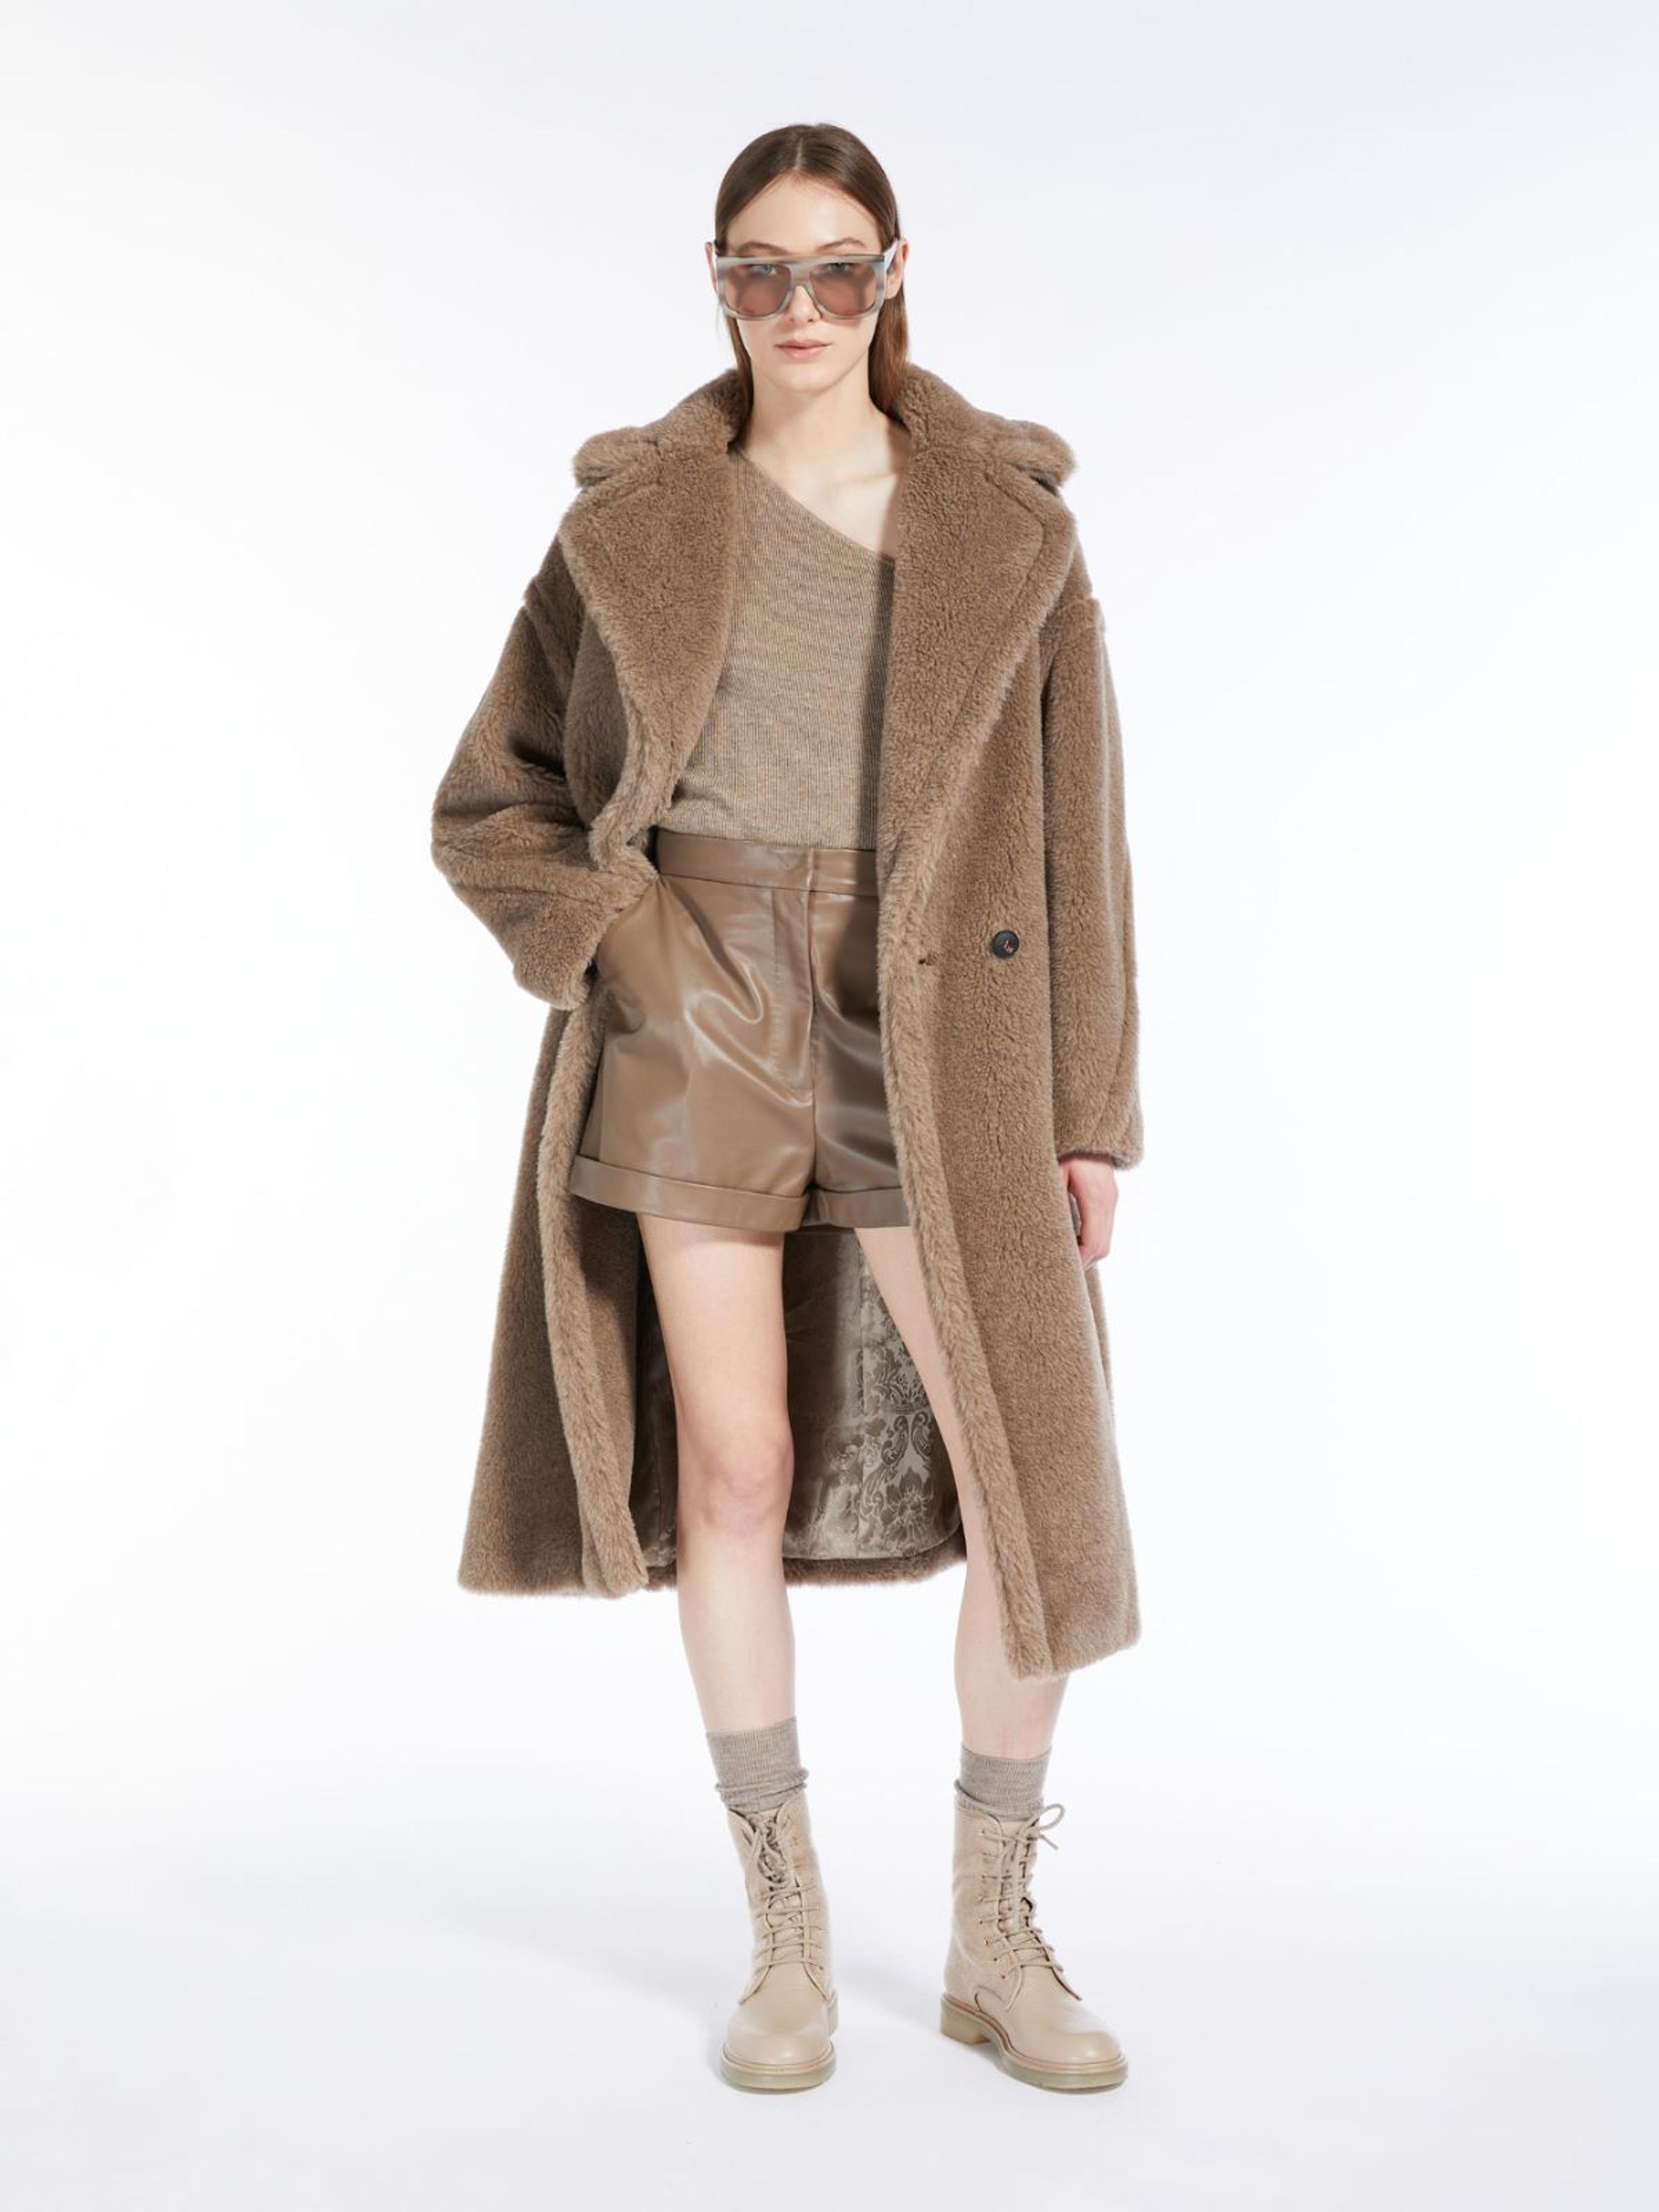 Teddy Bear Icon Coat in alpaca and cashmere, sand | "NUEVO" Max Mara